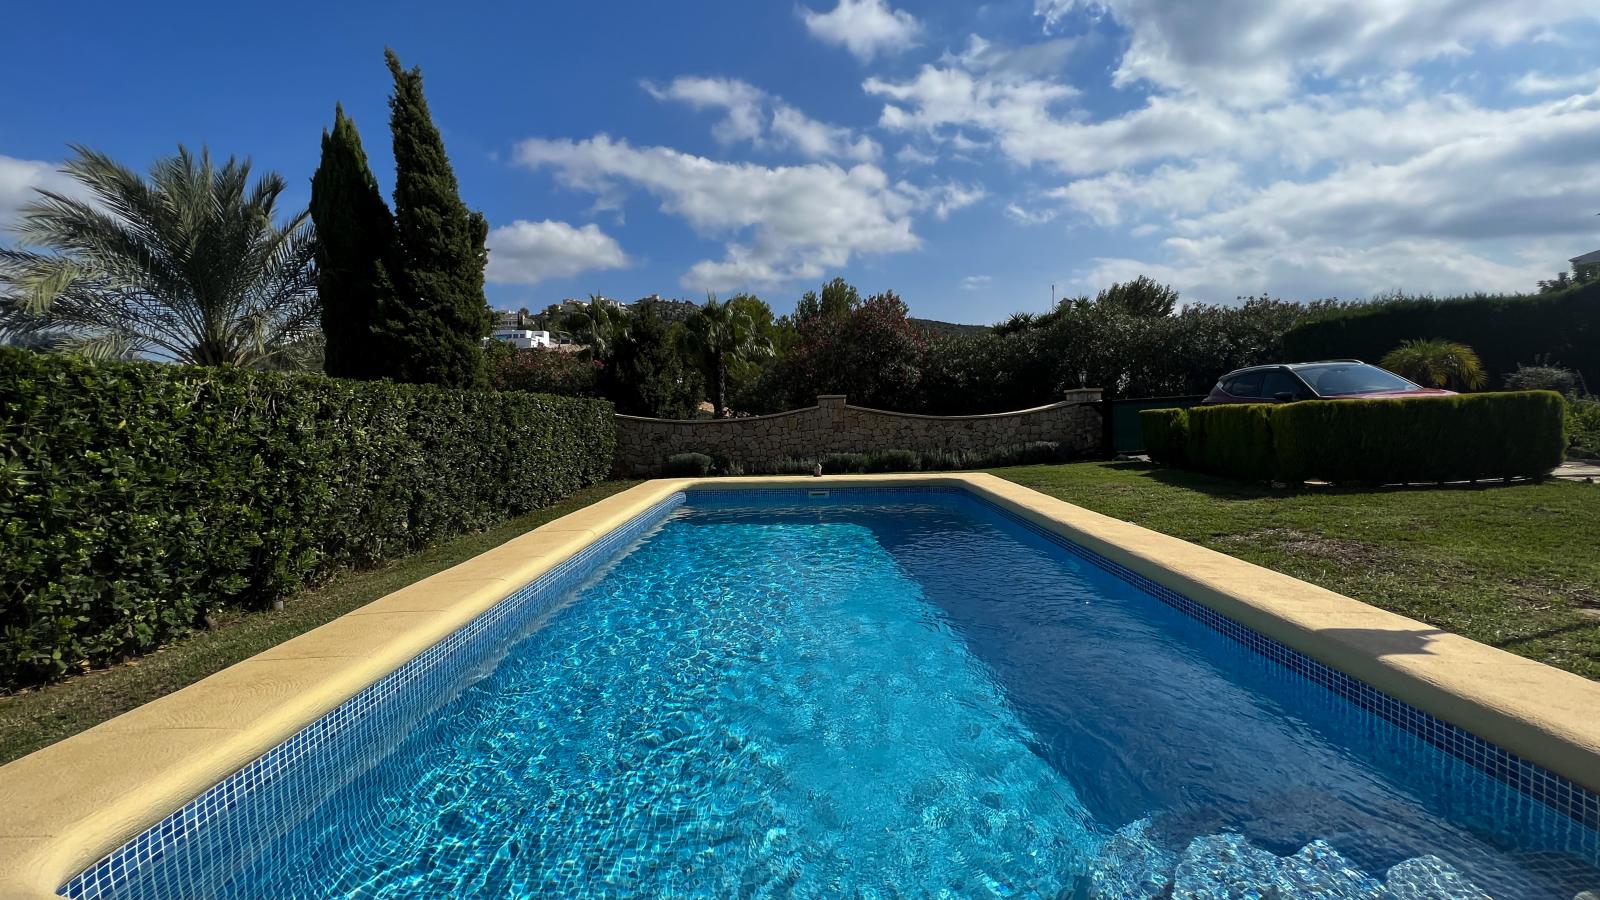 Grande villa familiale méditerranéenne avec piscine et 3 chambres à coucher, dans un quartier résidentiel calme de Rafol de Almunia